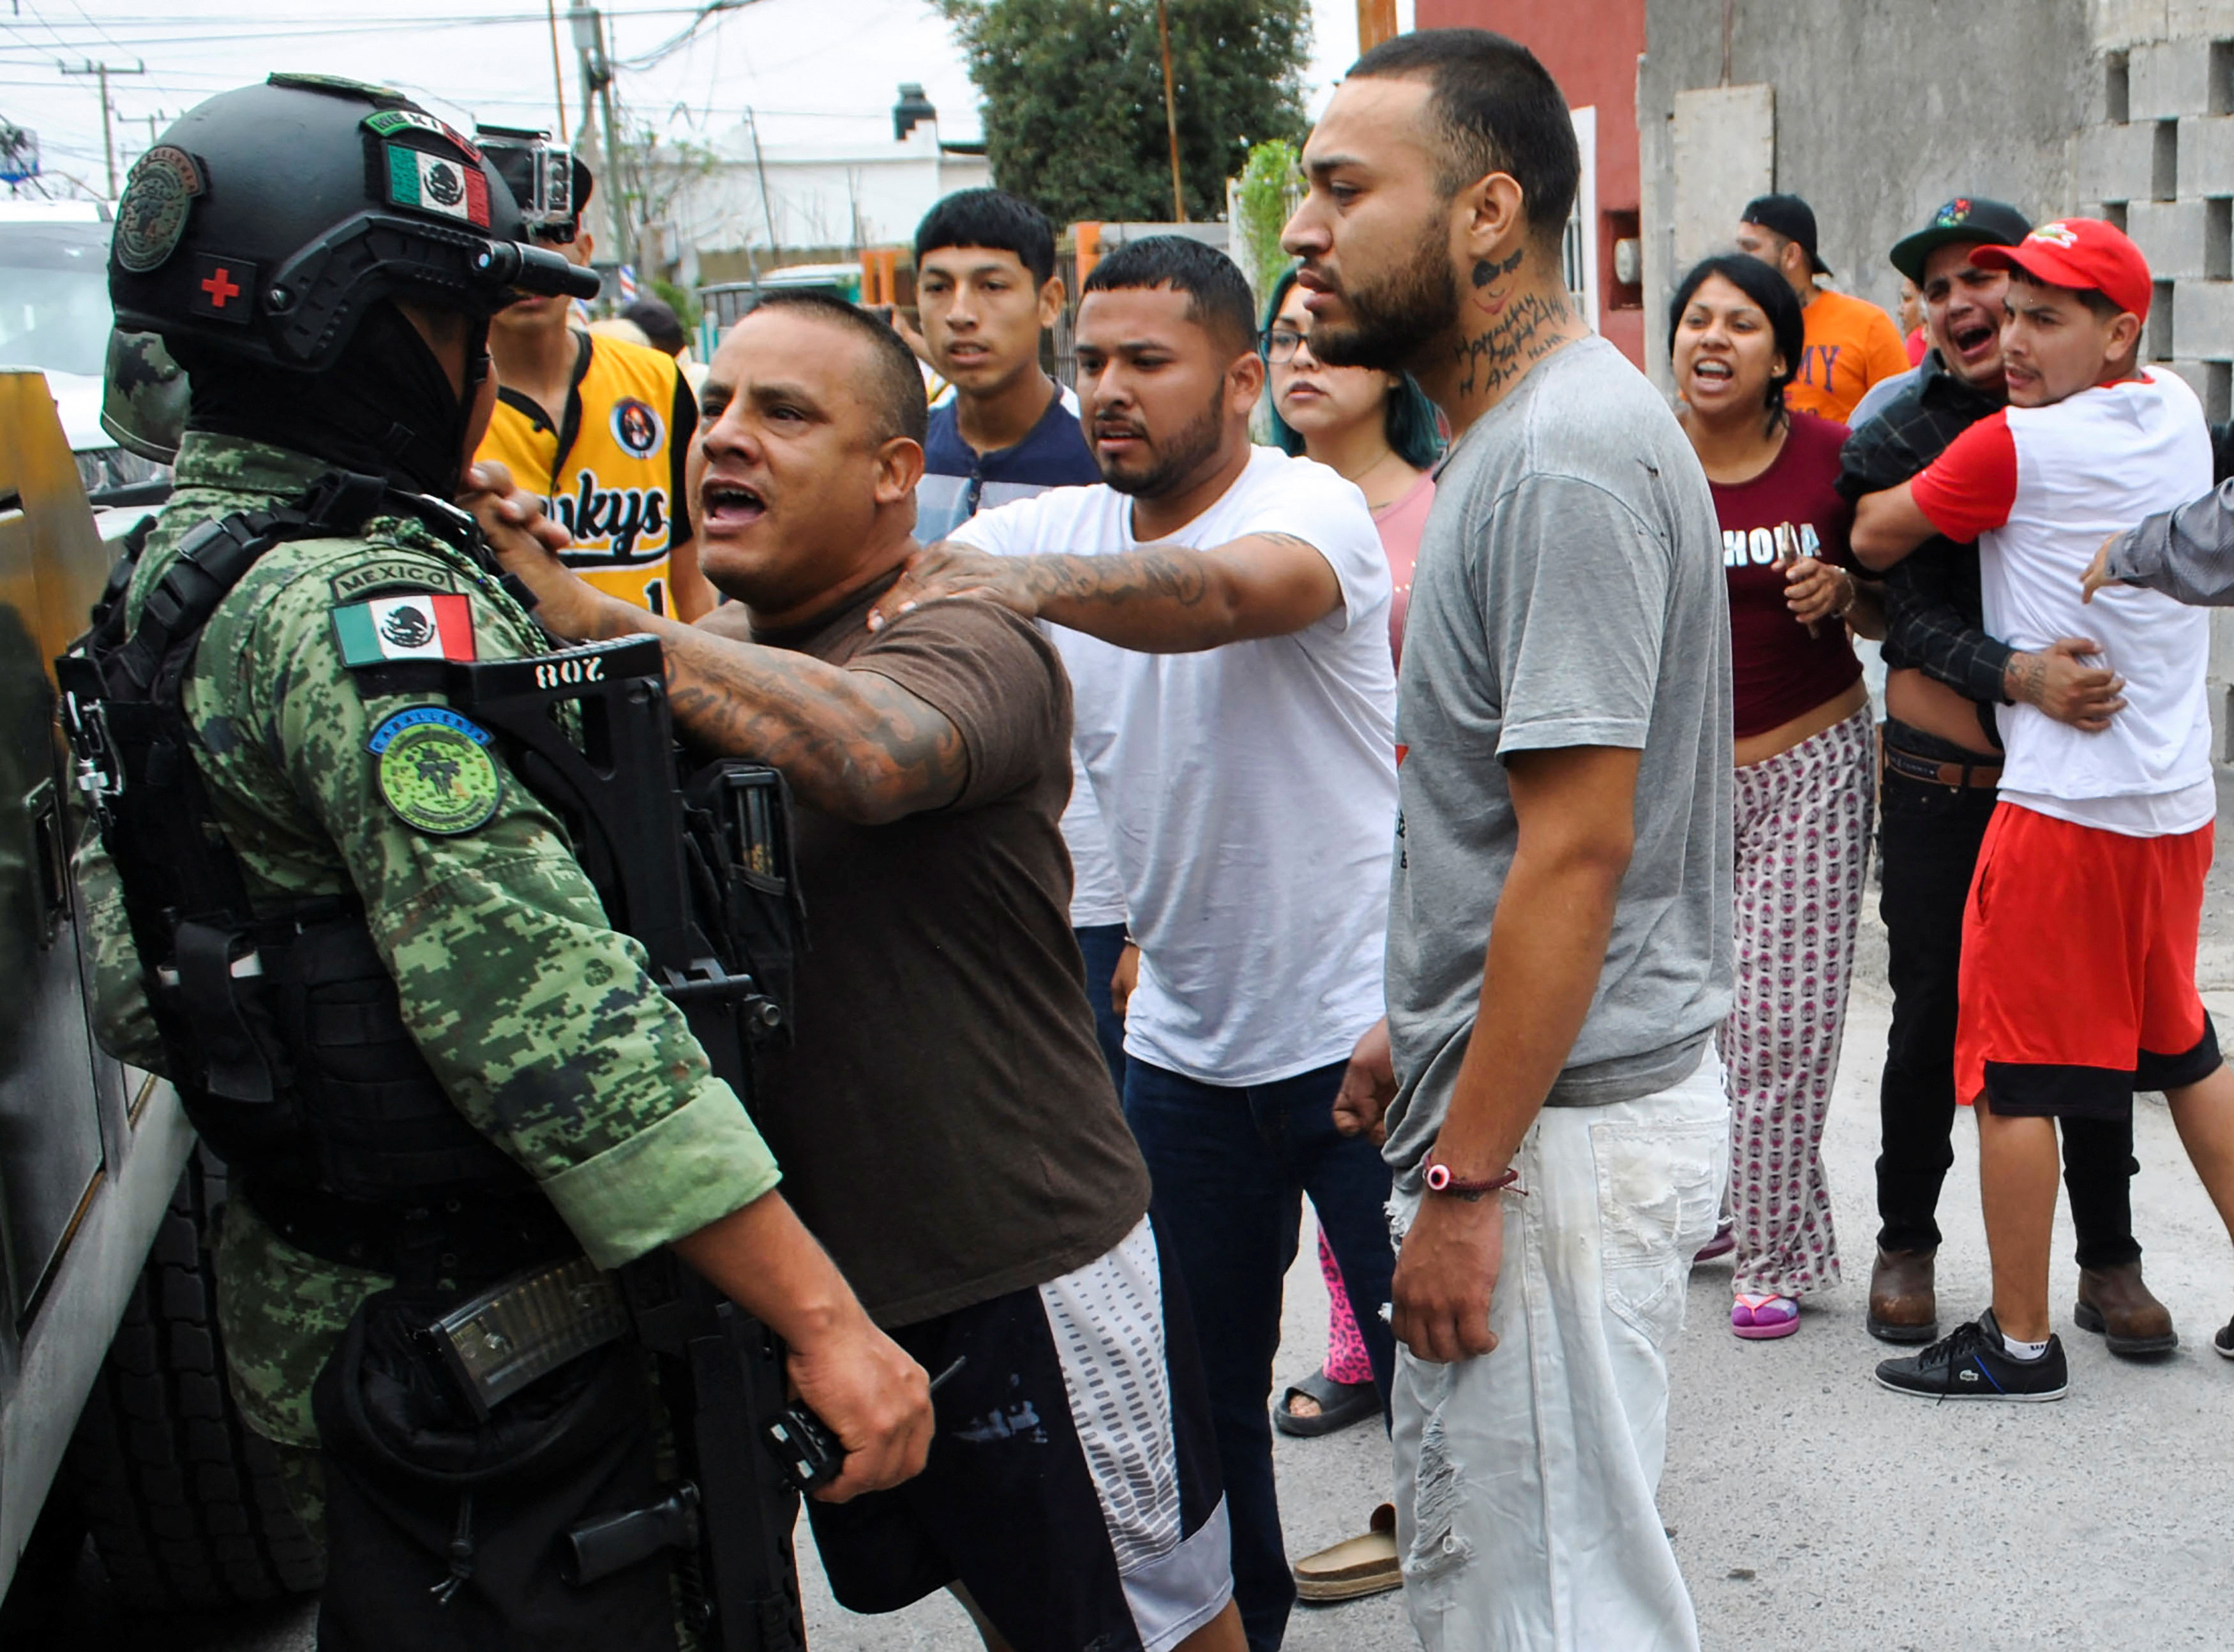 Seguridad ciudadana provoca que mexicanos se sienten menos satisfechos con su vida, según el Inegi